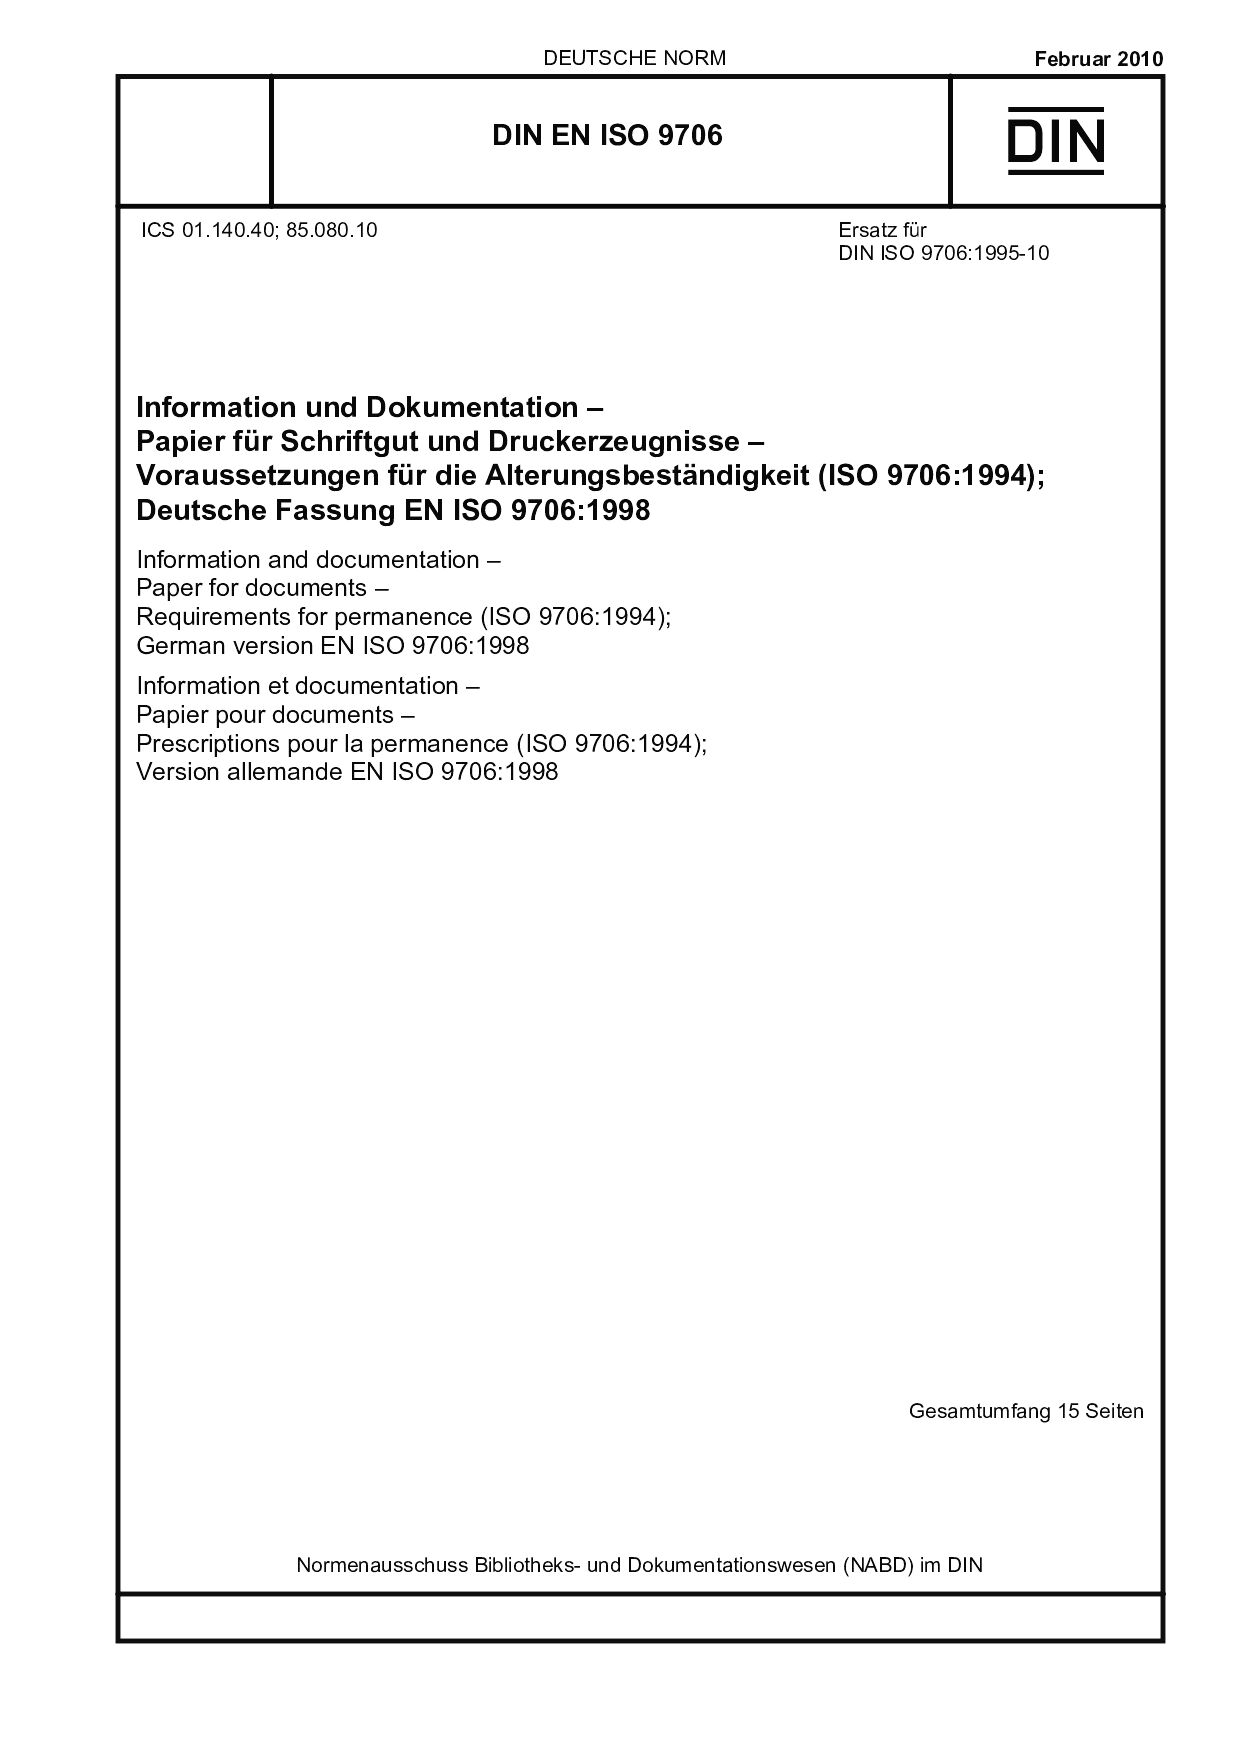 DIN EN ISO 9706:2010封面图